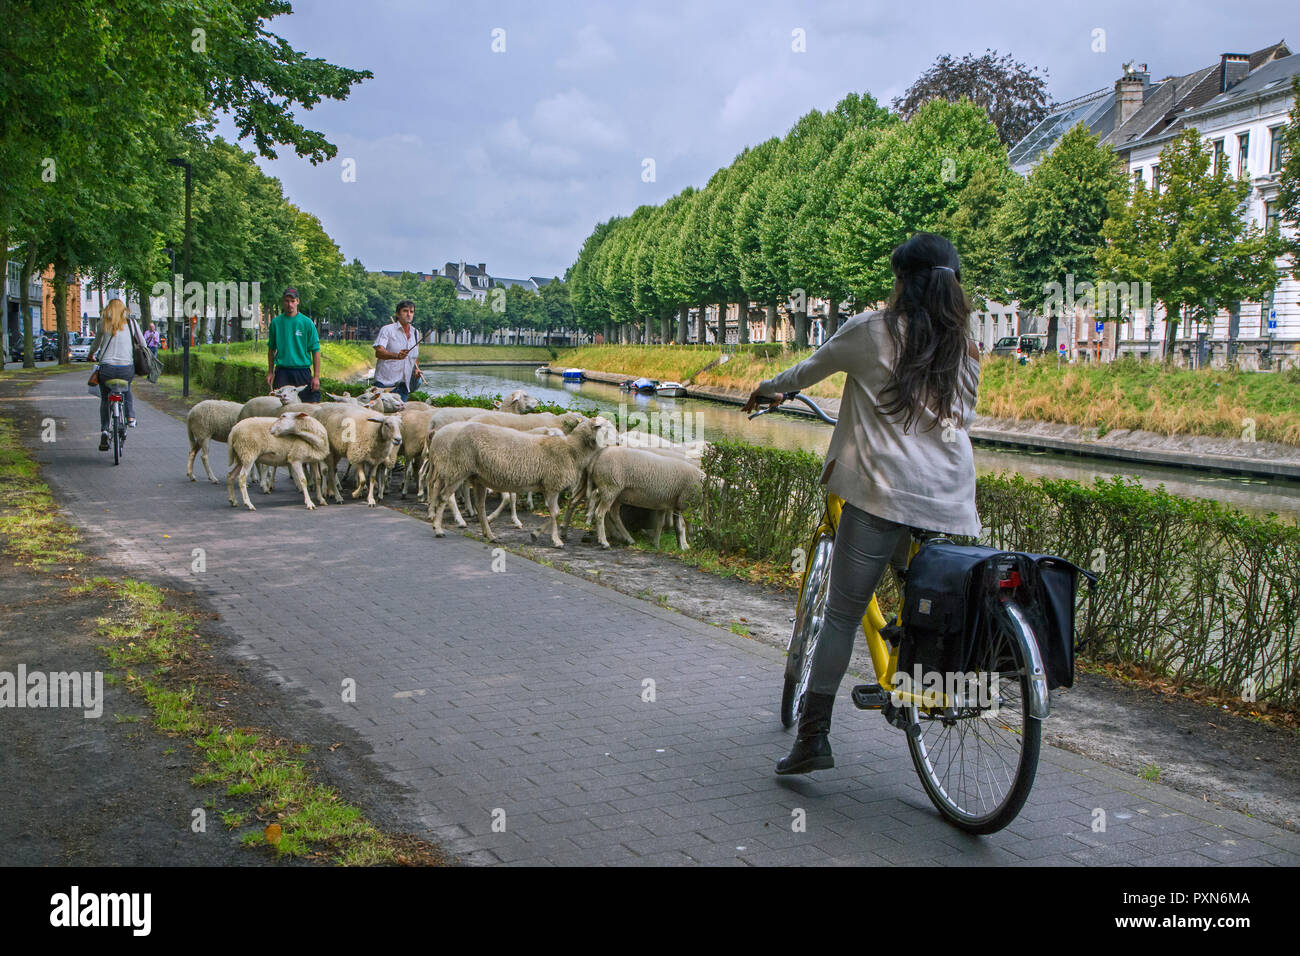 Radfahrer Anhalten auf Radweg für Shepherd herding Herde von Schafen entlang der Straße grasen Gras von Canal Bank in der Stadt Gent, Flandern, Belgien Stockfoto